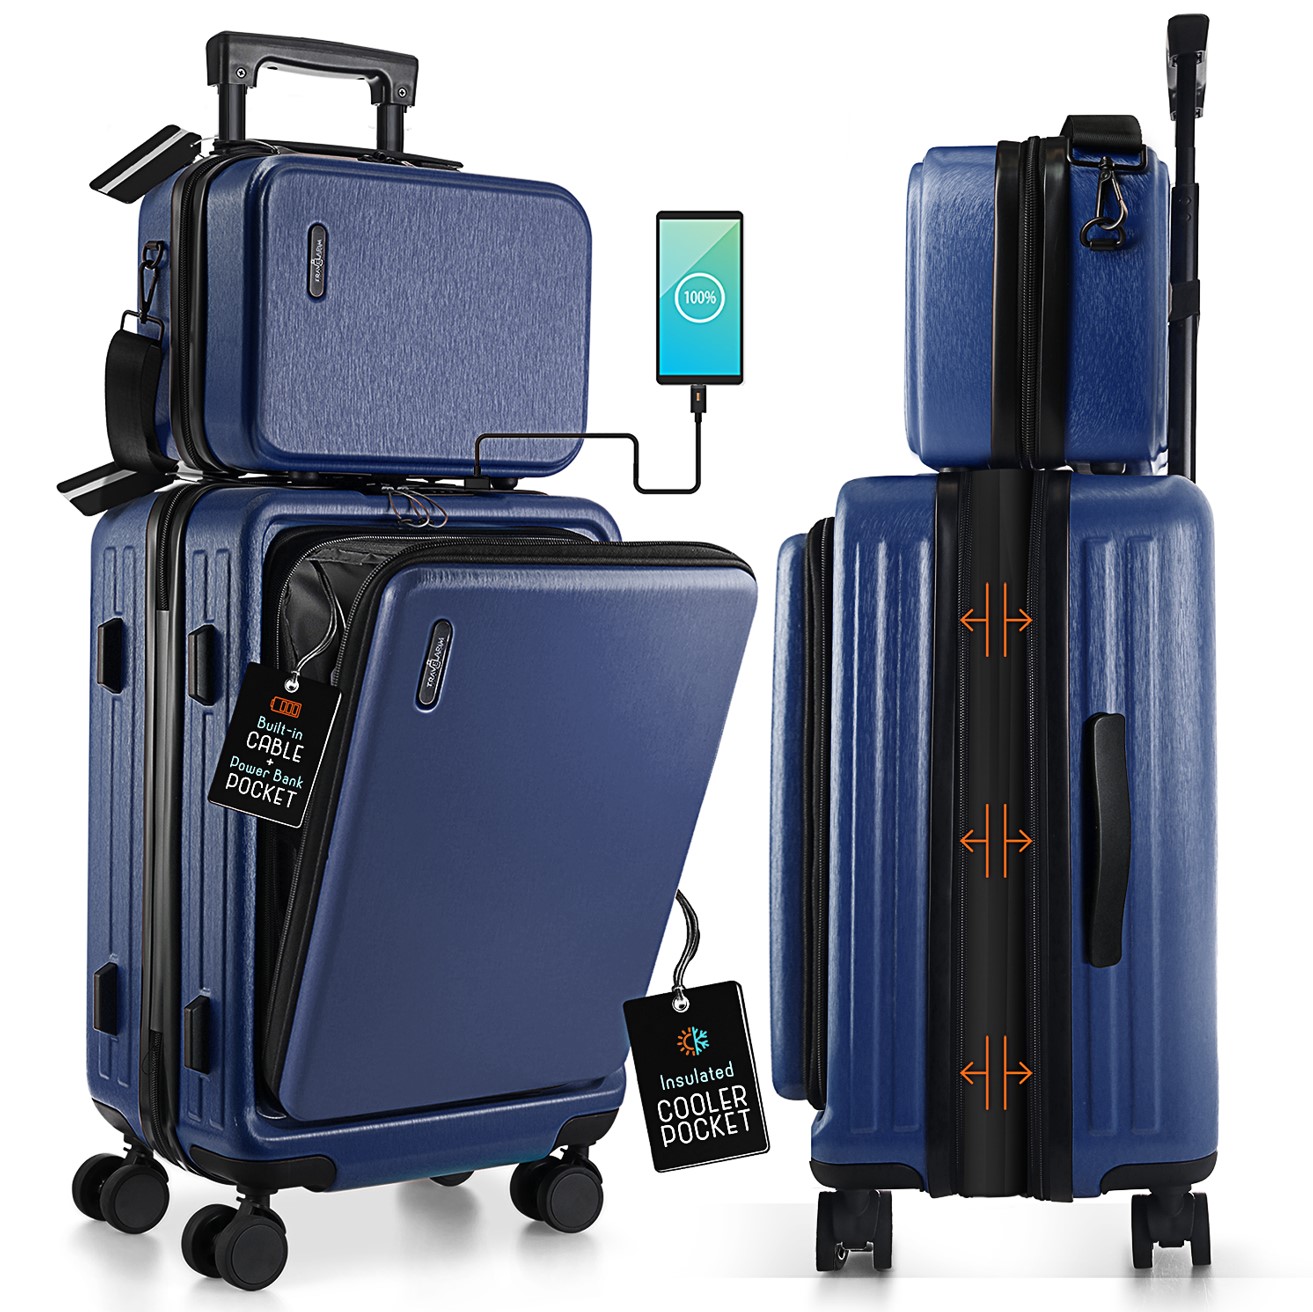 StorageBud 20 inch Hardside Carry-On Expandable Luggage, Front Pocket Luggage Set Spinner Suitcase Set, Navy Blue - image 3 of 10